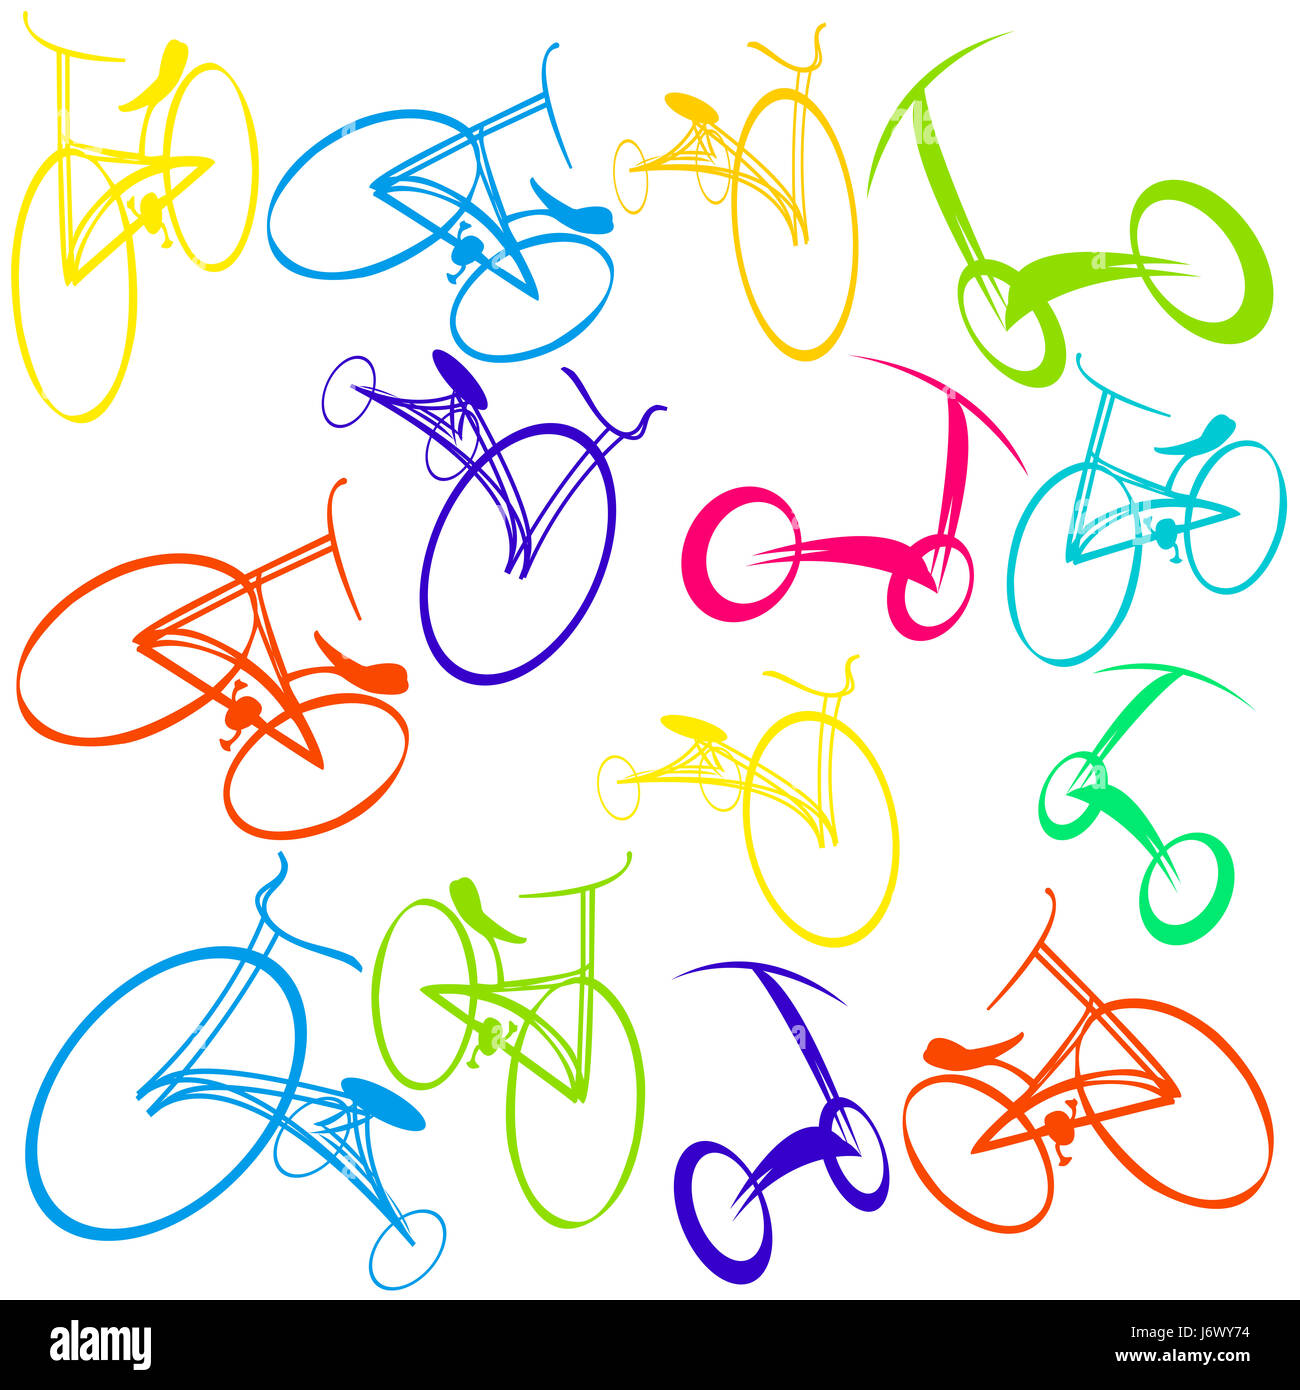 art cartoon bike bicycle cycle backdrop background immature infantile childish Stock Photo